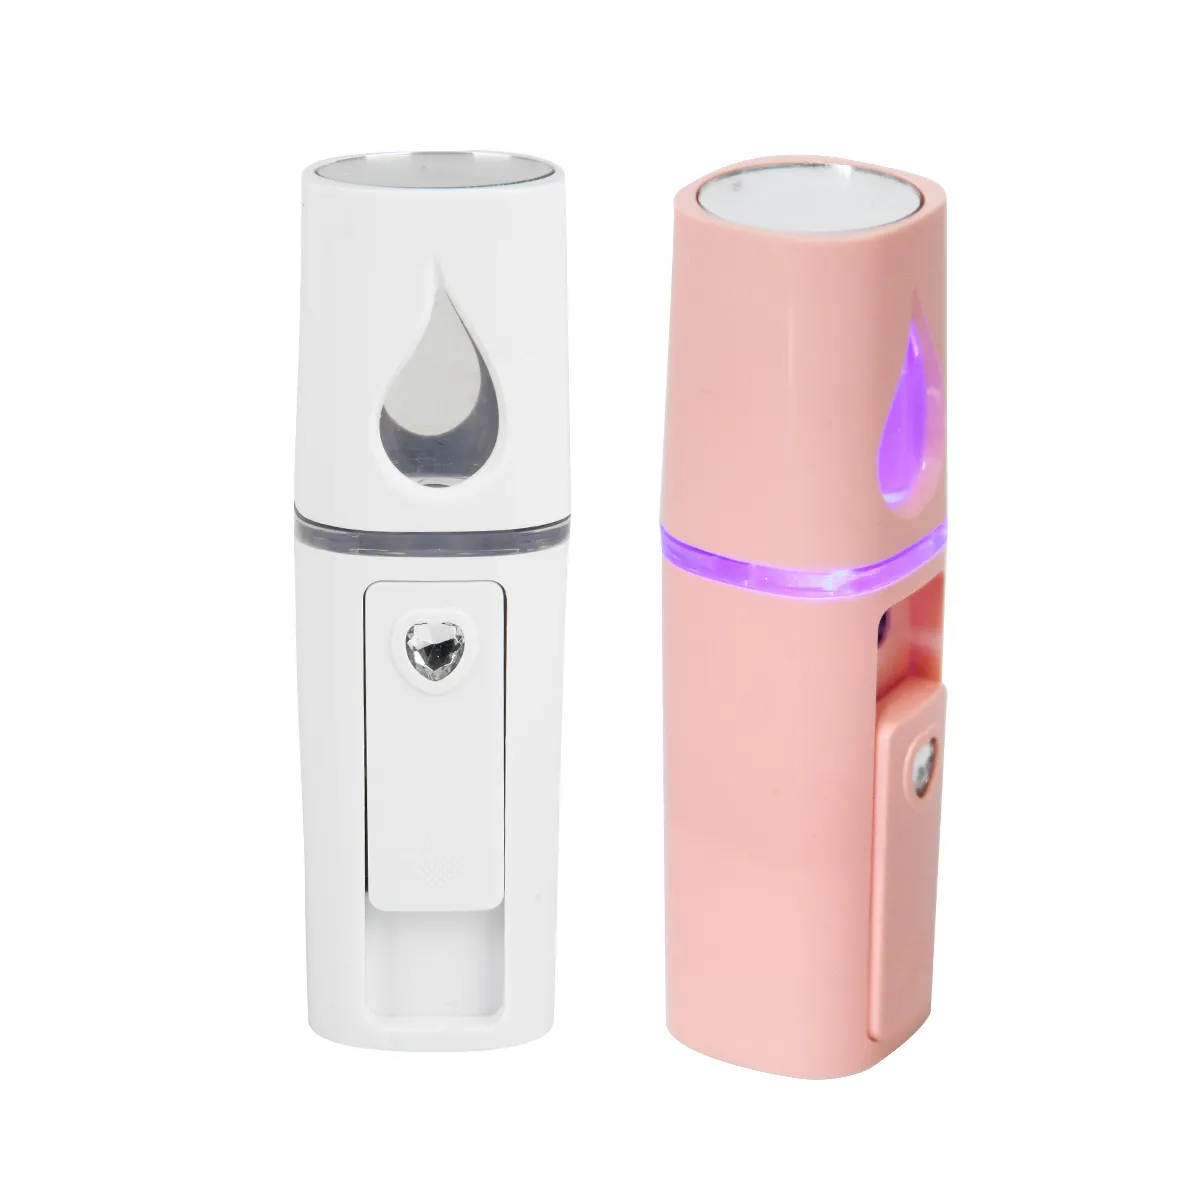 Deiu Nano Portable Humidifier Electric Atomizer Sprayer Face Mini Deep Cleansing Facial Mist Sprayer